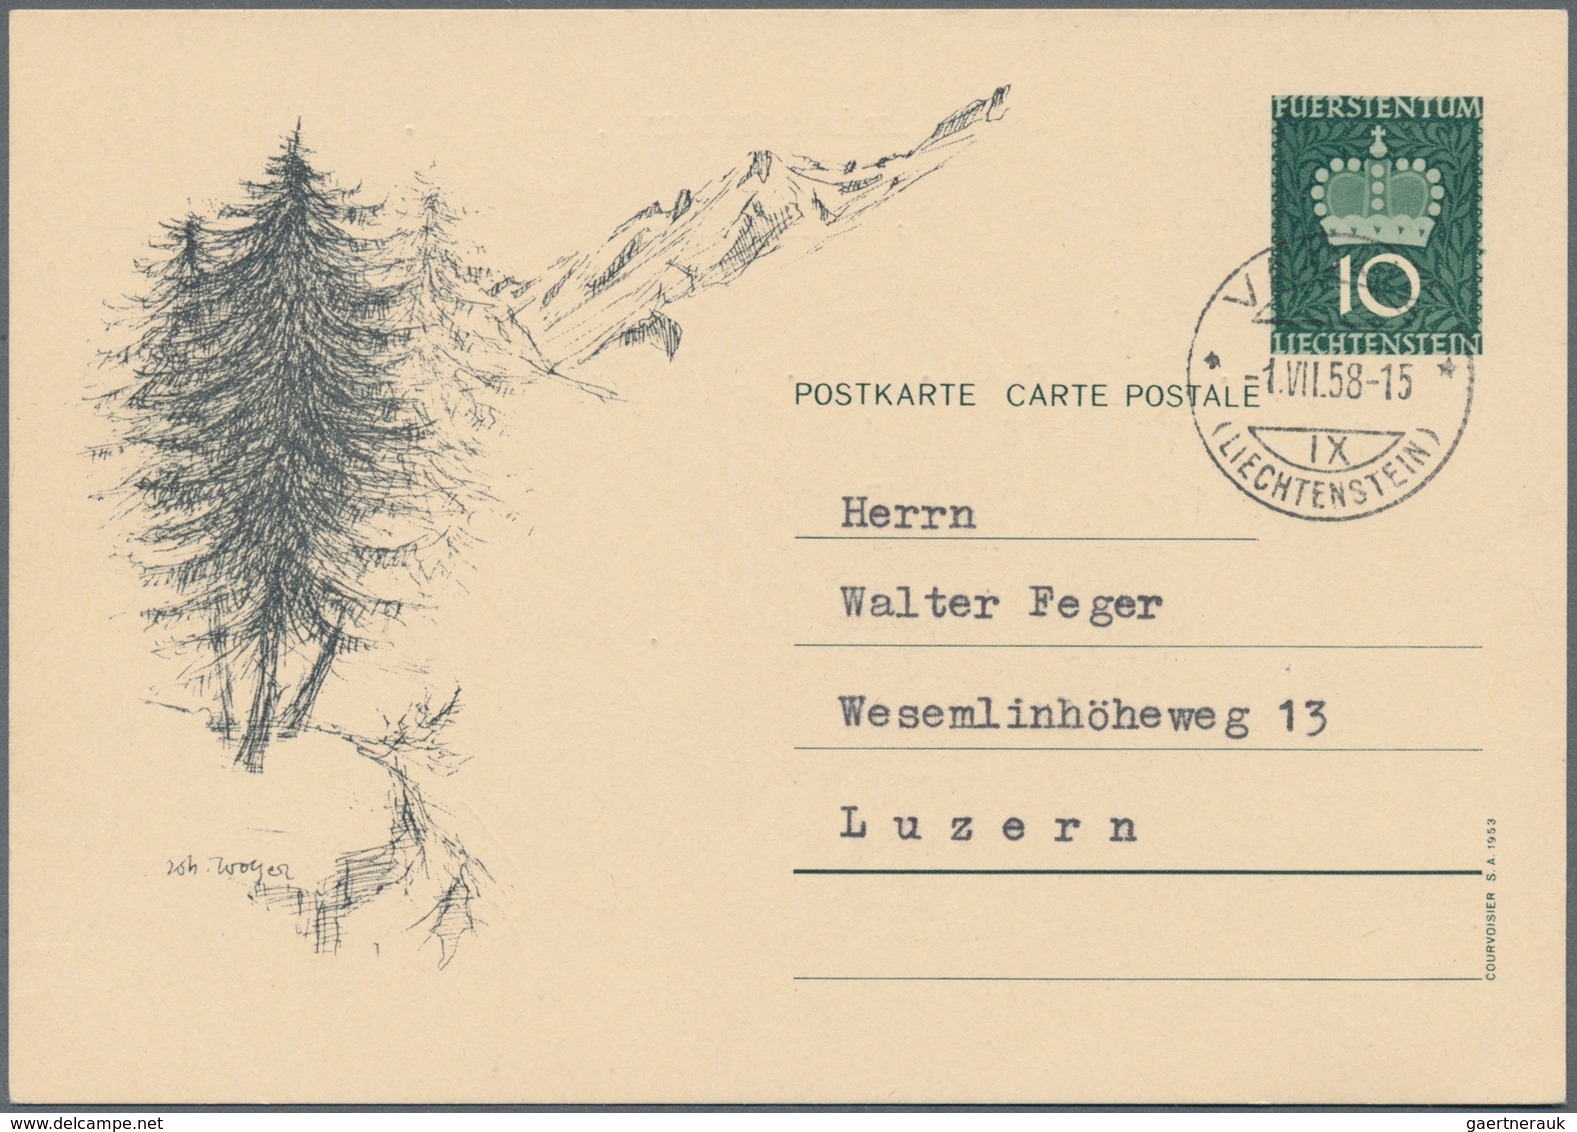 Liechtenstein - Ganzsachen: 1953, 10 Rp. Fürstenkrone mit Druckvermerk S.A.1953, alle 10 Bilder, mei